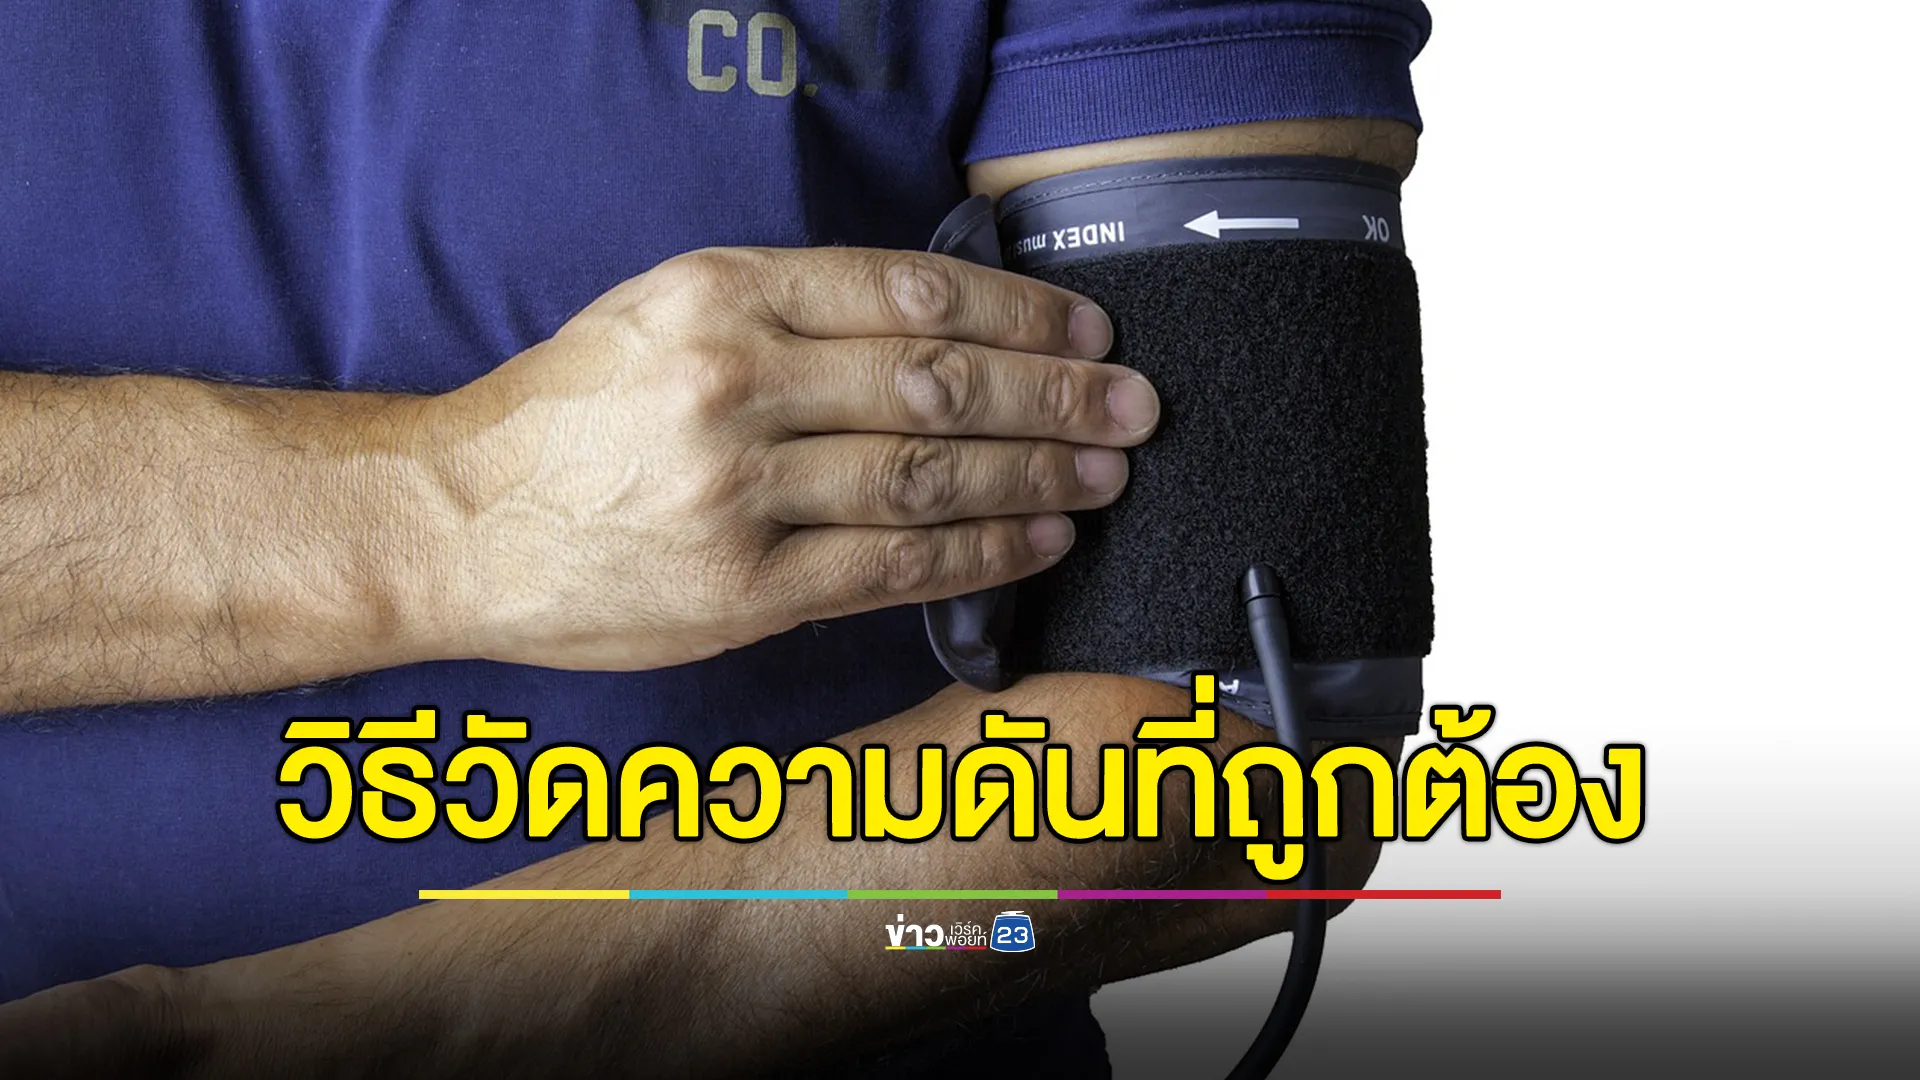 พบคนไทยป่วยโรคความดันโลหิตสูง 14 ล้านคน แนะวิธีปฏิตัว